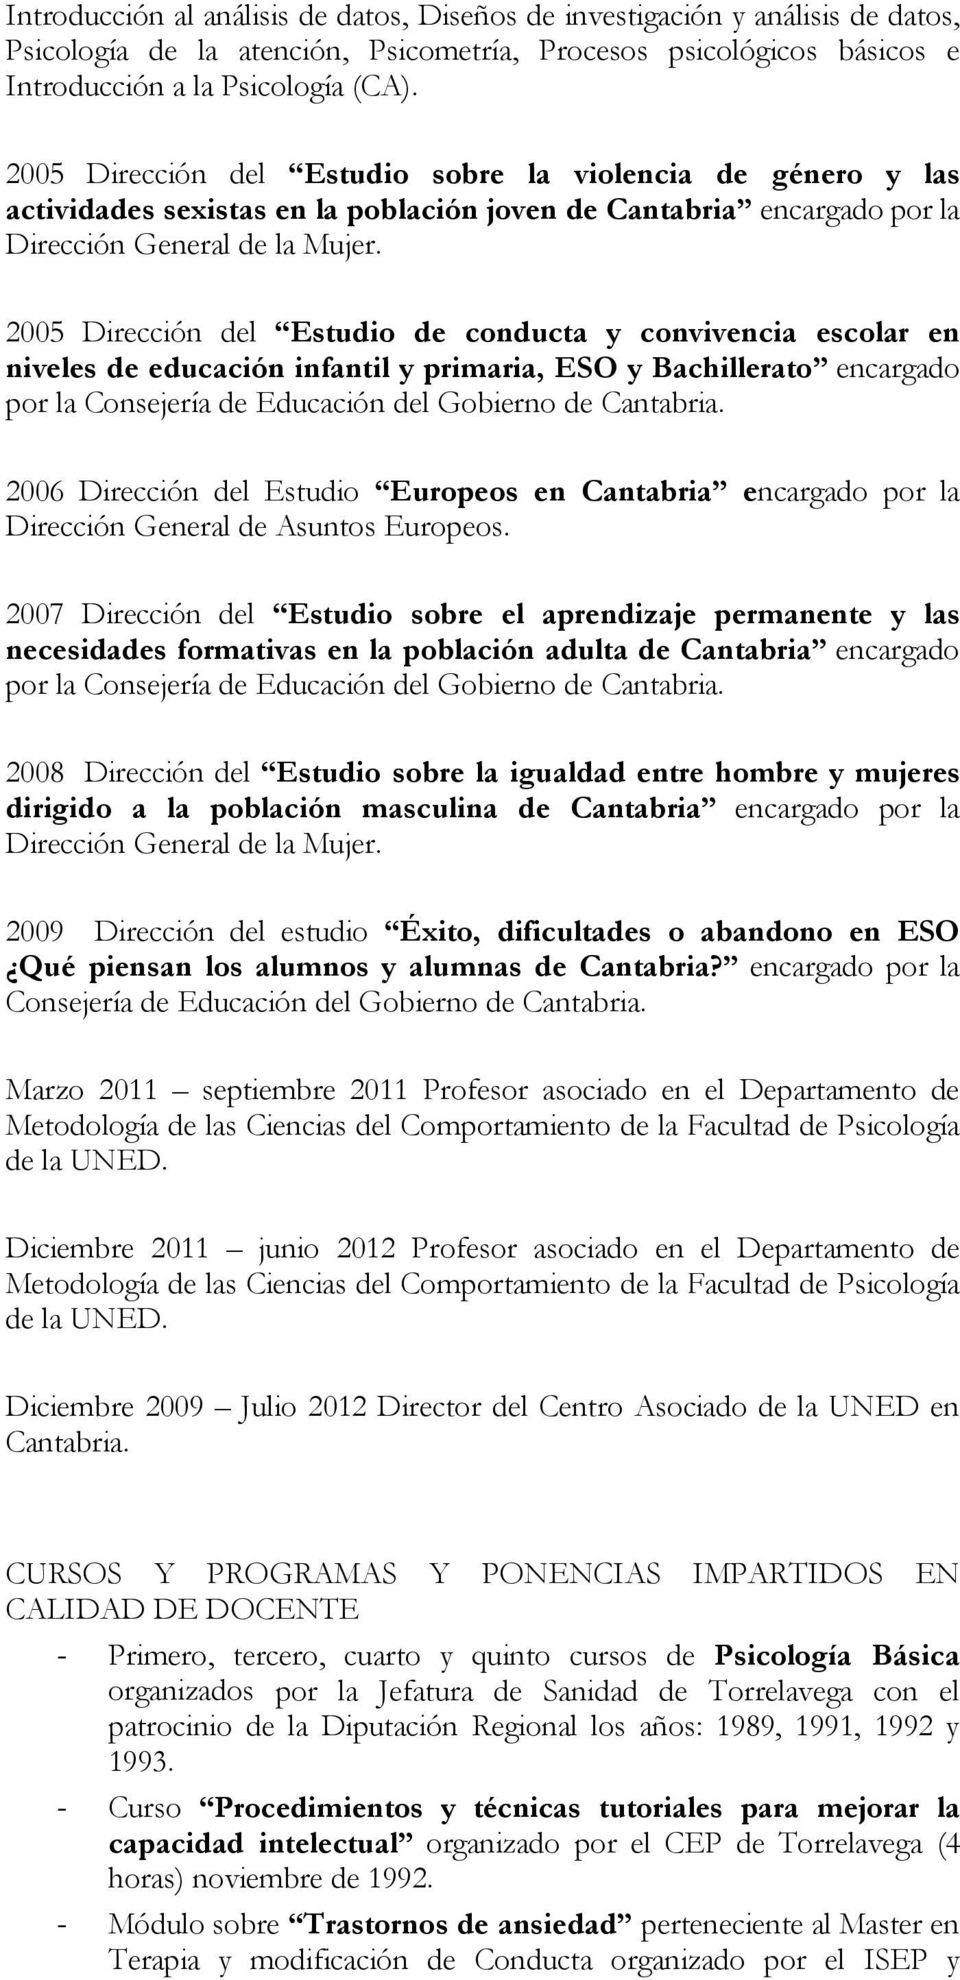 2005 Dirección del Estudio de conducta y convivencia escolar en niveles de educación infantil y primaria, ESO y Bachillerato encargado por la Consejería de Educación del Gobierno de Cantabria.